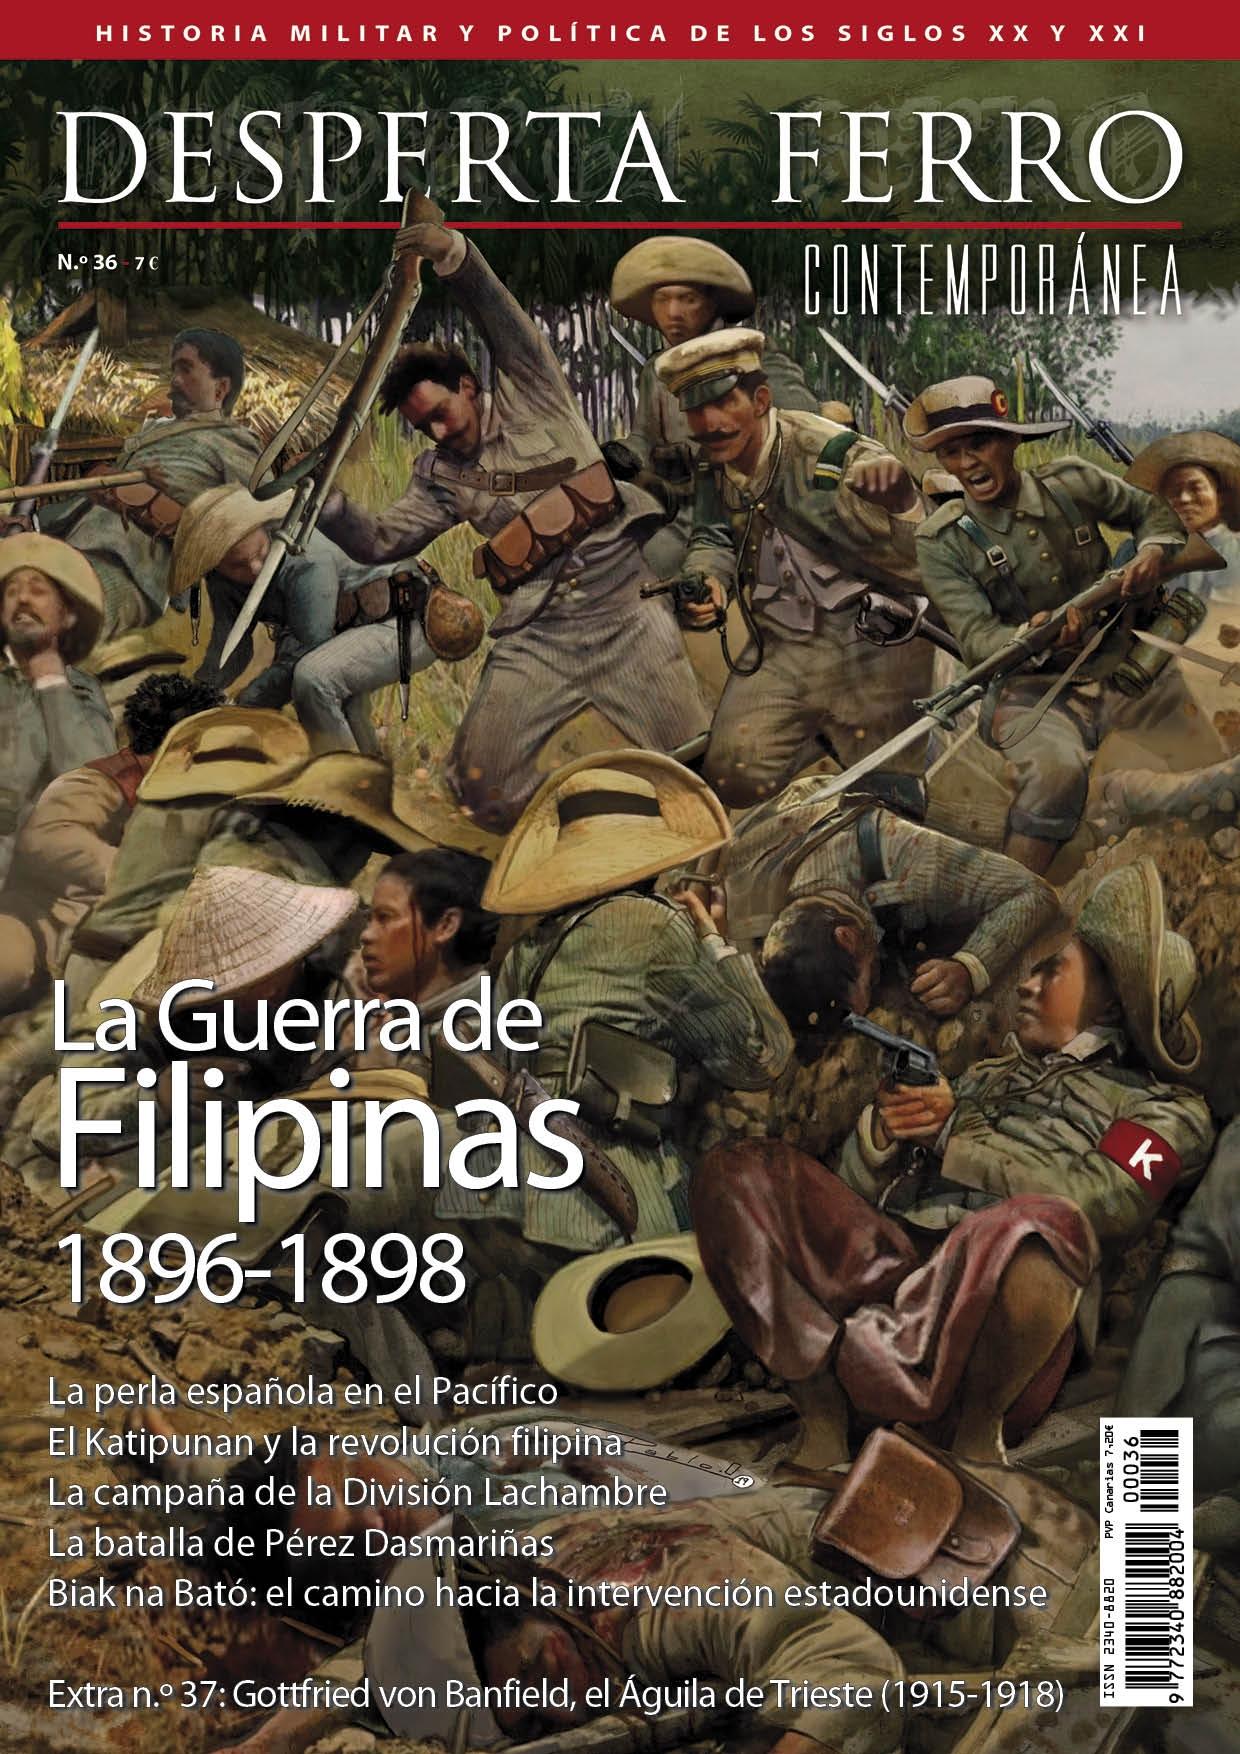 Desperta Ferro. Contemporánea nº 36: La guerra de Filipinas 1896-1898. 